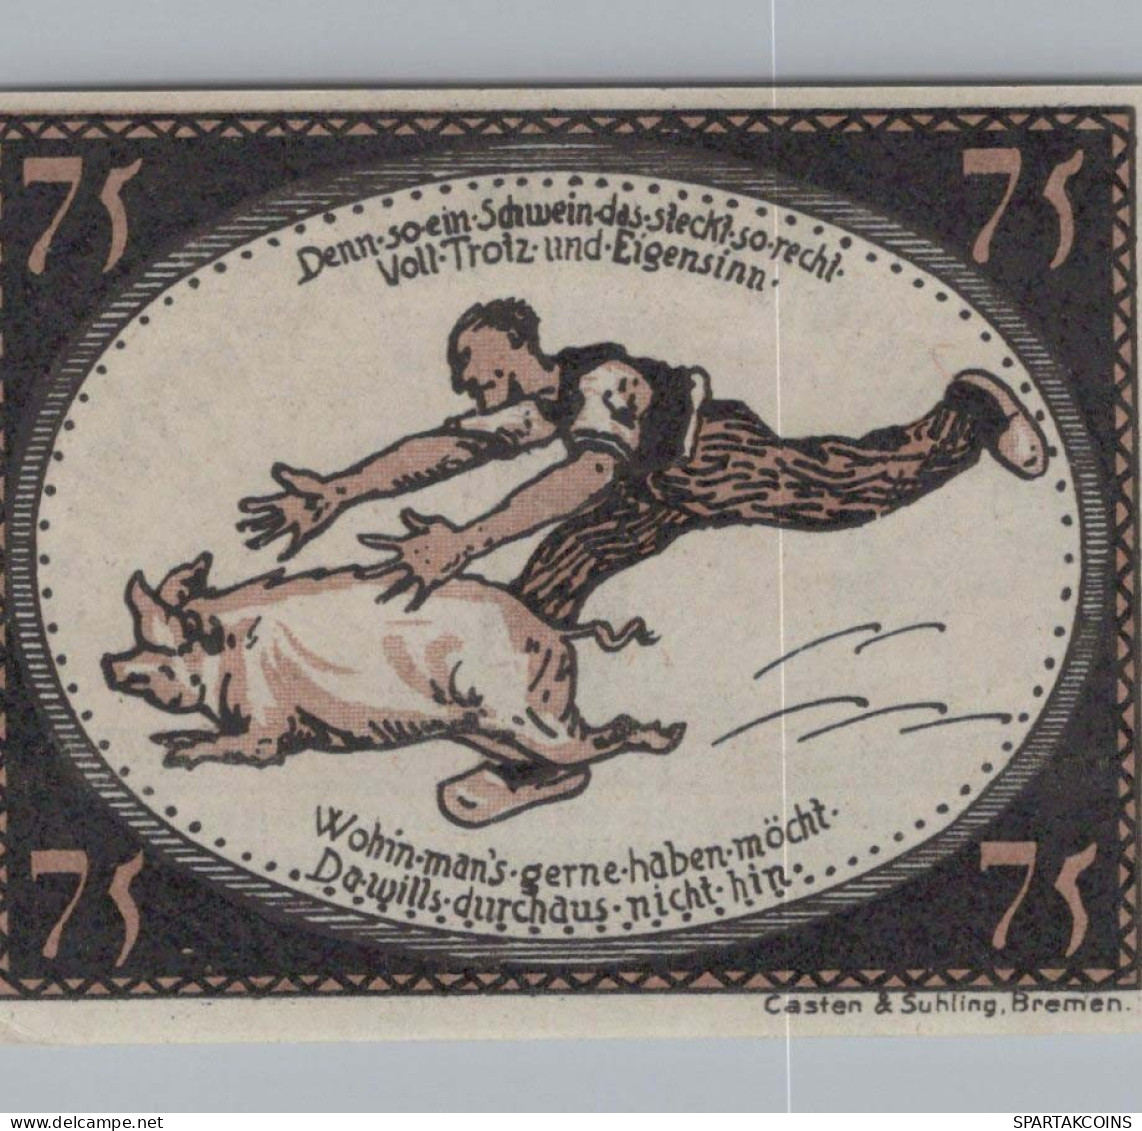 75 PFENNIG 1921 Stadt DIEPHOLZ Hanover UNC DEUTSCHLAND Notgeld Banknote #PA461 - [11] Emisiones Locales